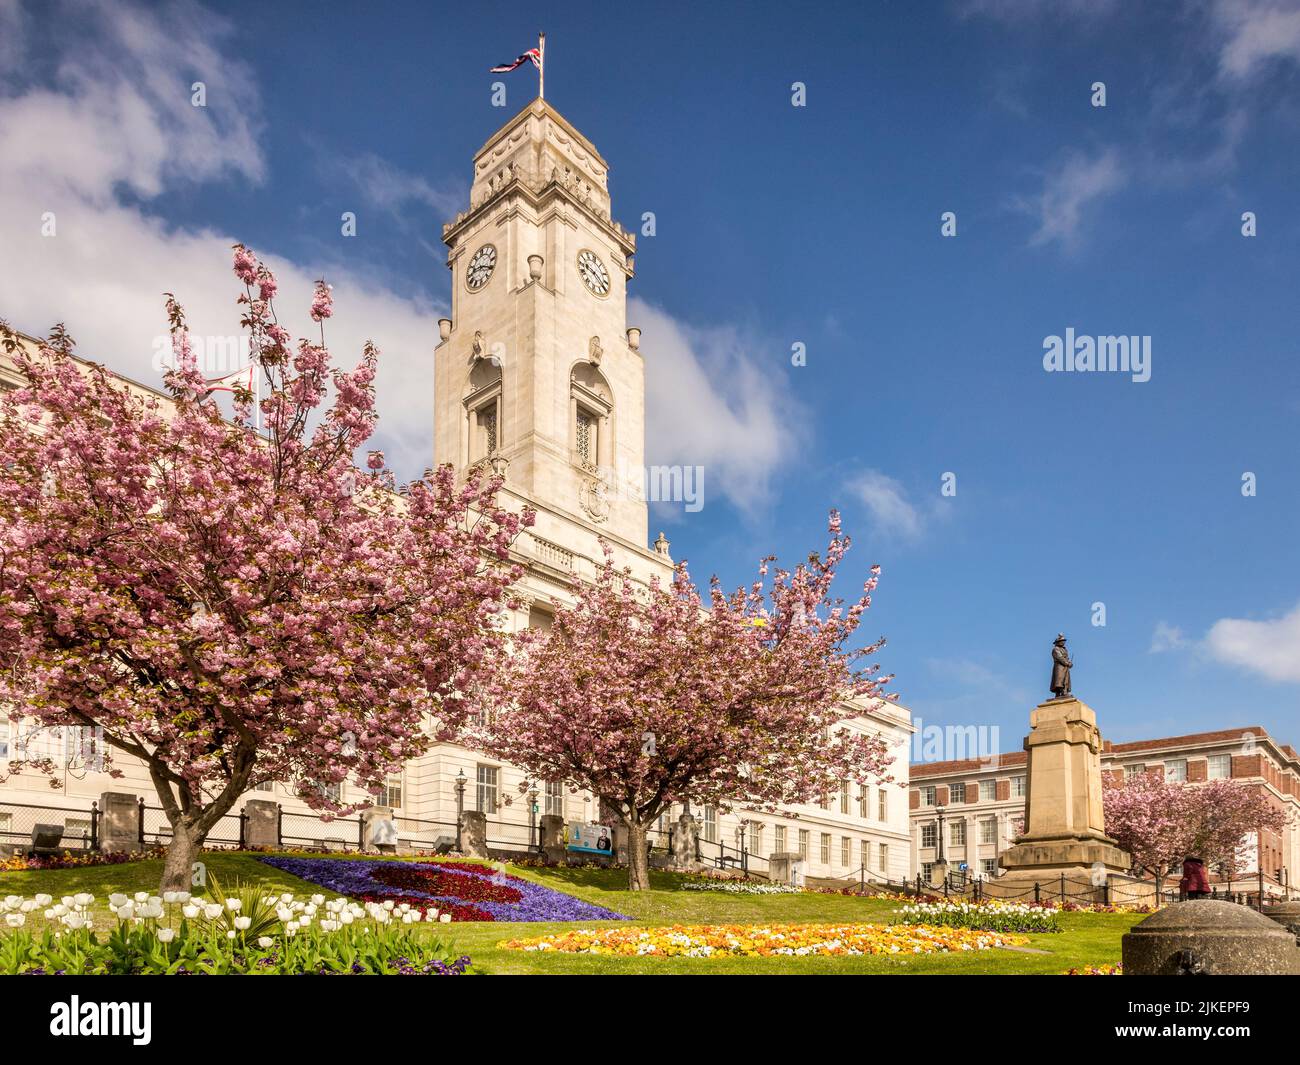 24 aprile 2022: Barnsley, South Yorkshire - Municipio di Barnsley in una bella giornata di primavera, con cielo blu e giardini in fiore. Foto Stock